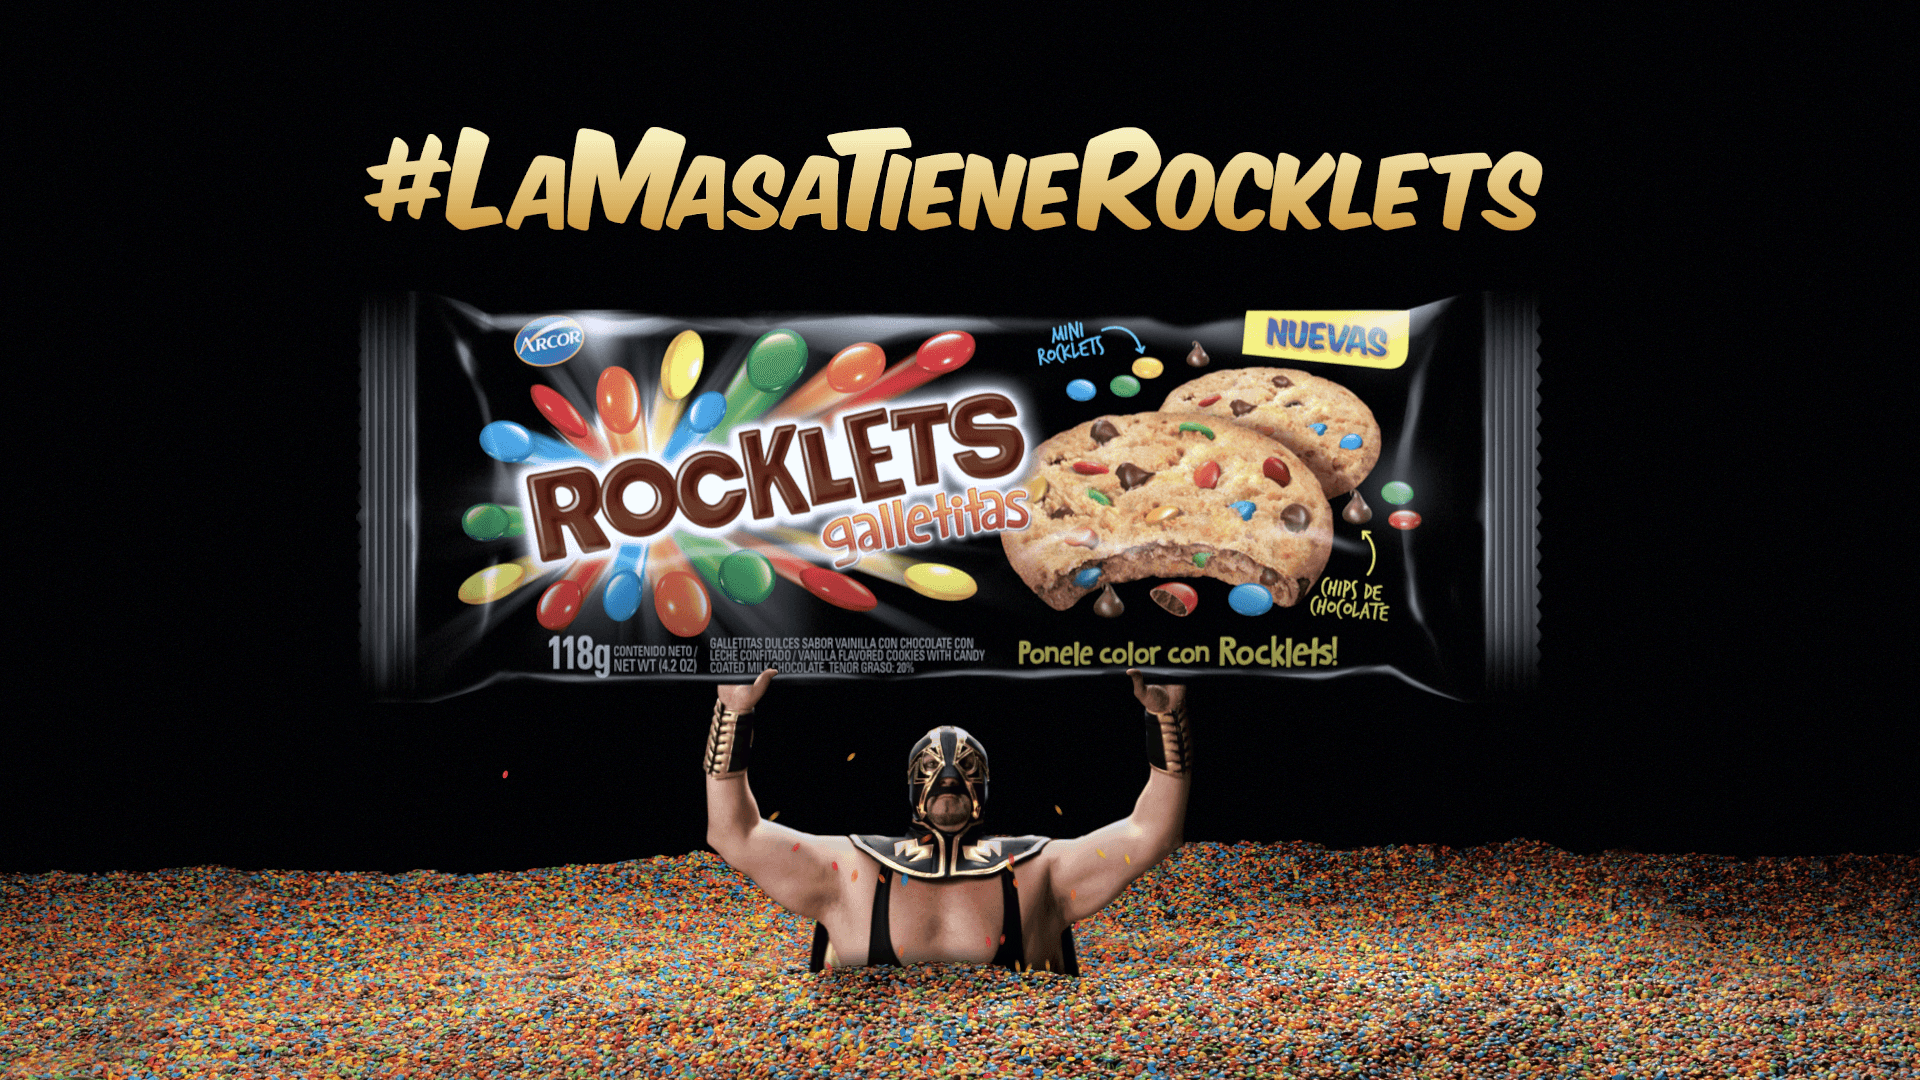 Portada de Arcor presenta la campaña de lanzamiento de las nuevas galletitas Rocklets